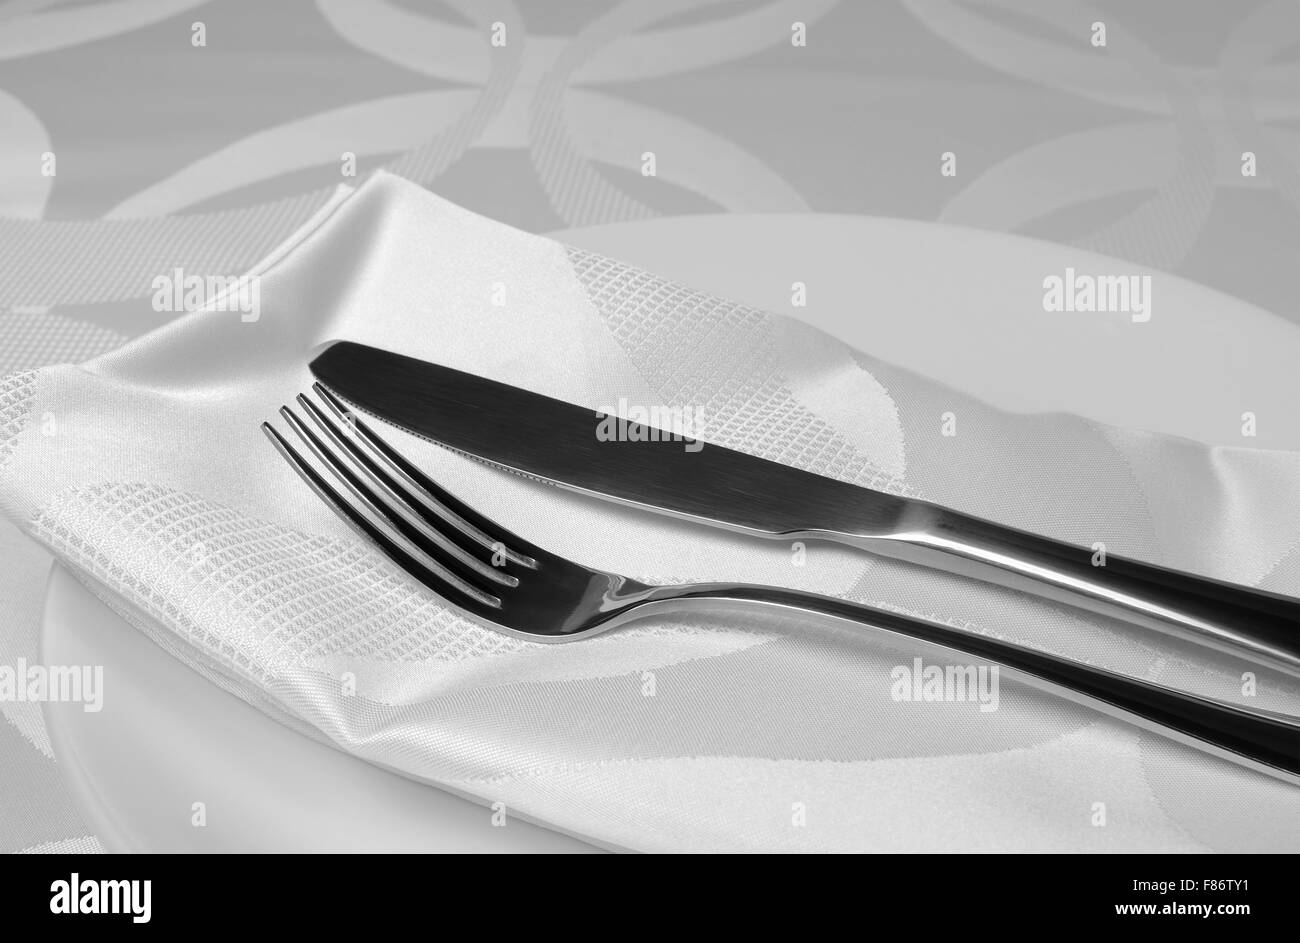 Besteck Messer und Gabel auf einer Serviette Stockfoto